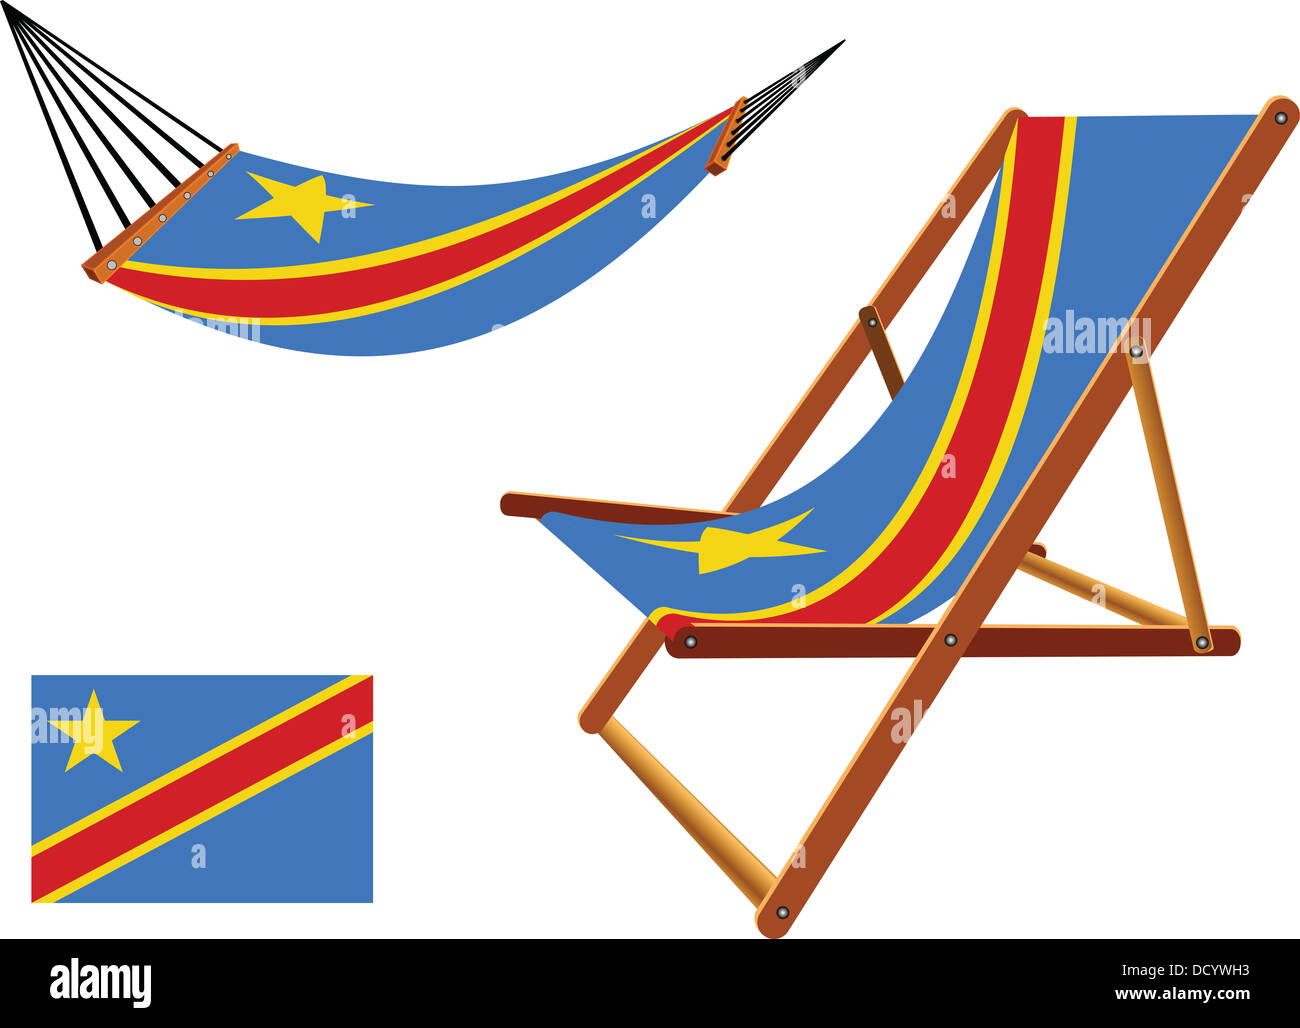 Congo hamac et chaise sur fond blanc, abstract vector art illustration Banque D'Images